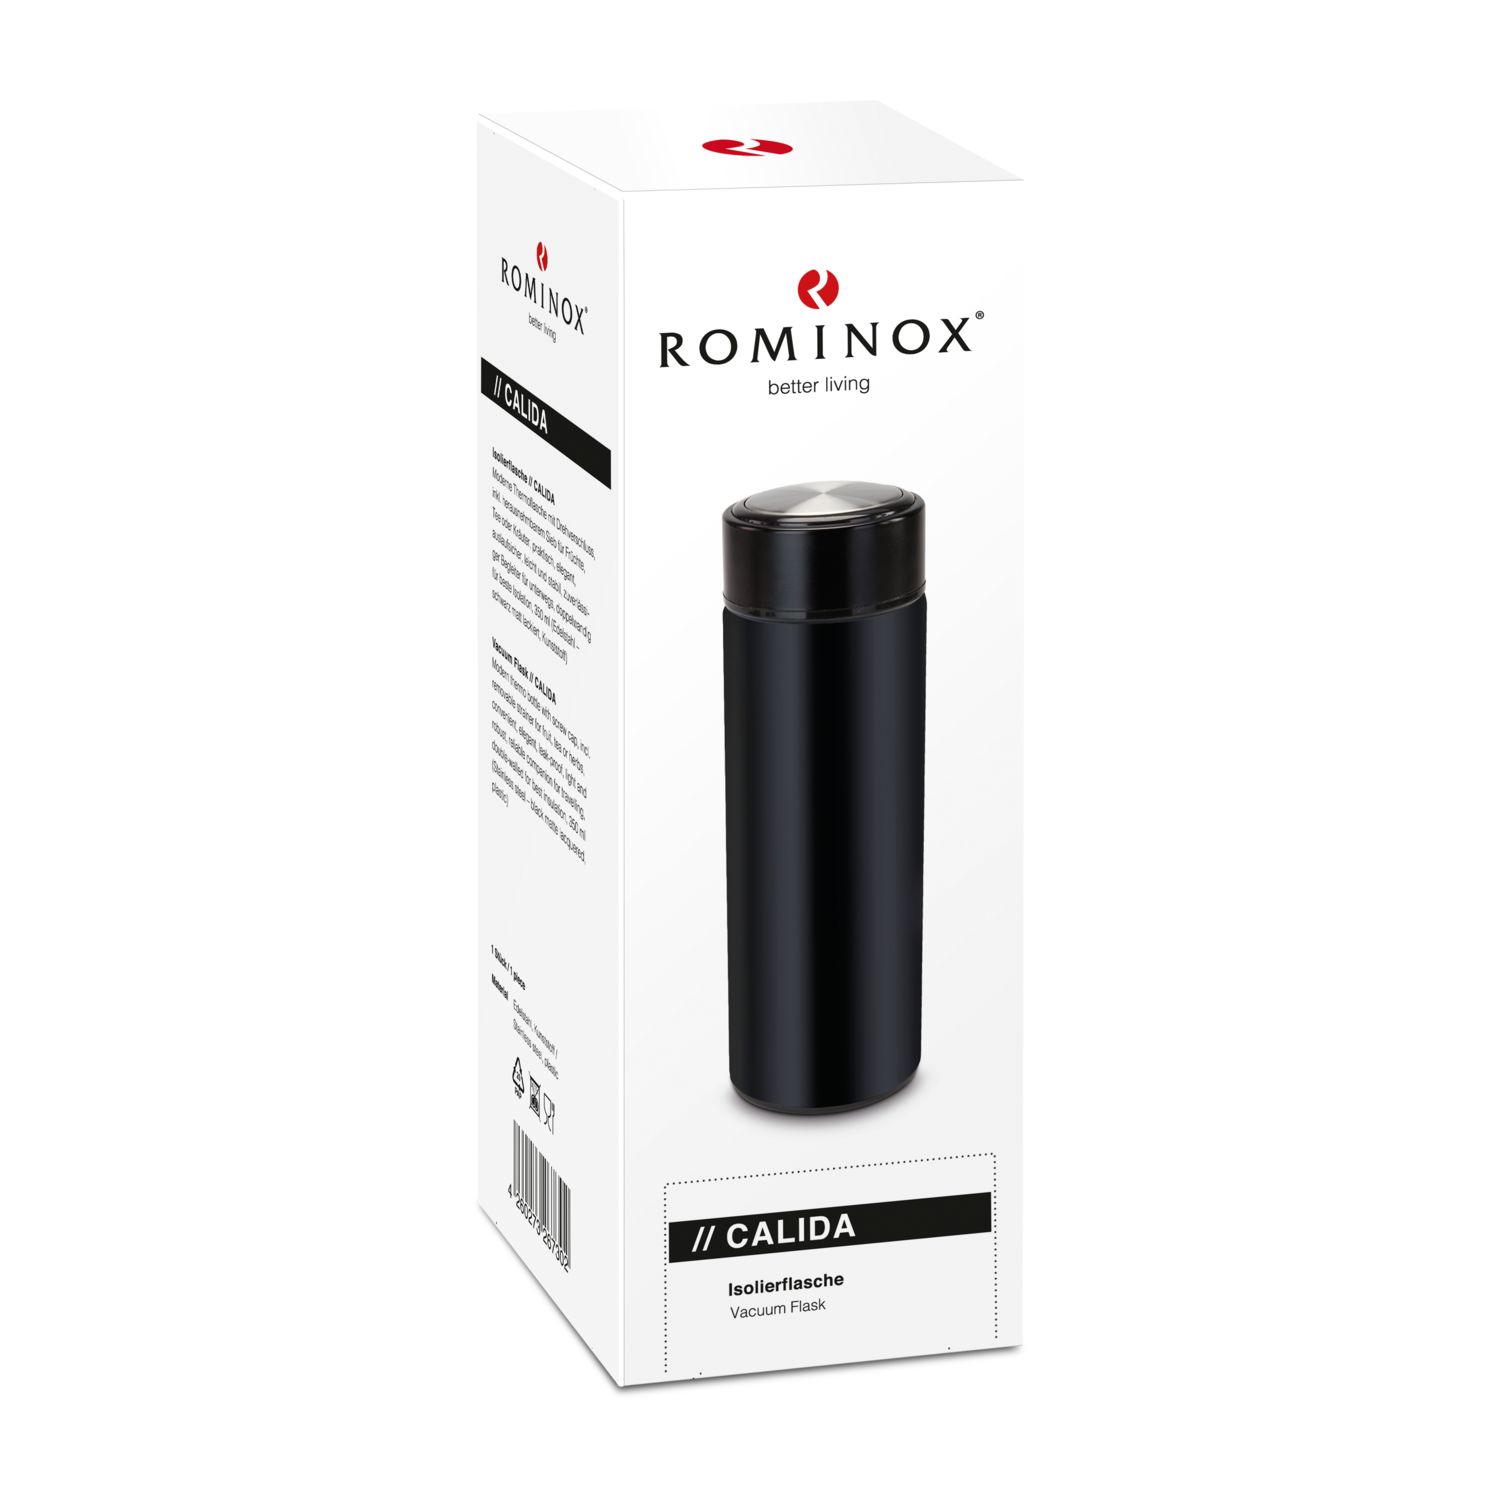 ROMINOX® Isolierflasche // Calida